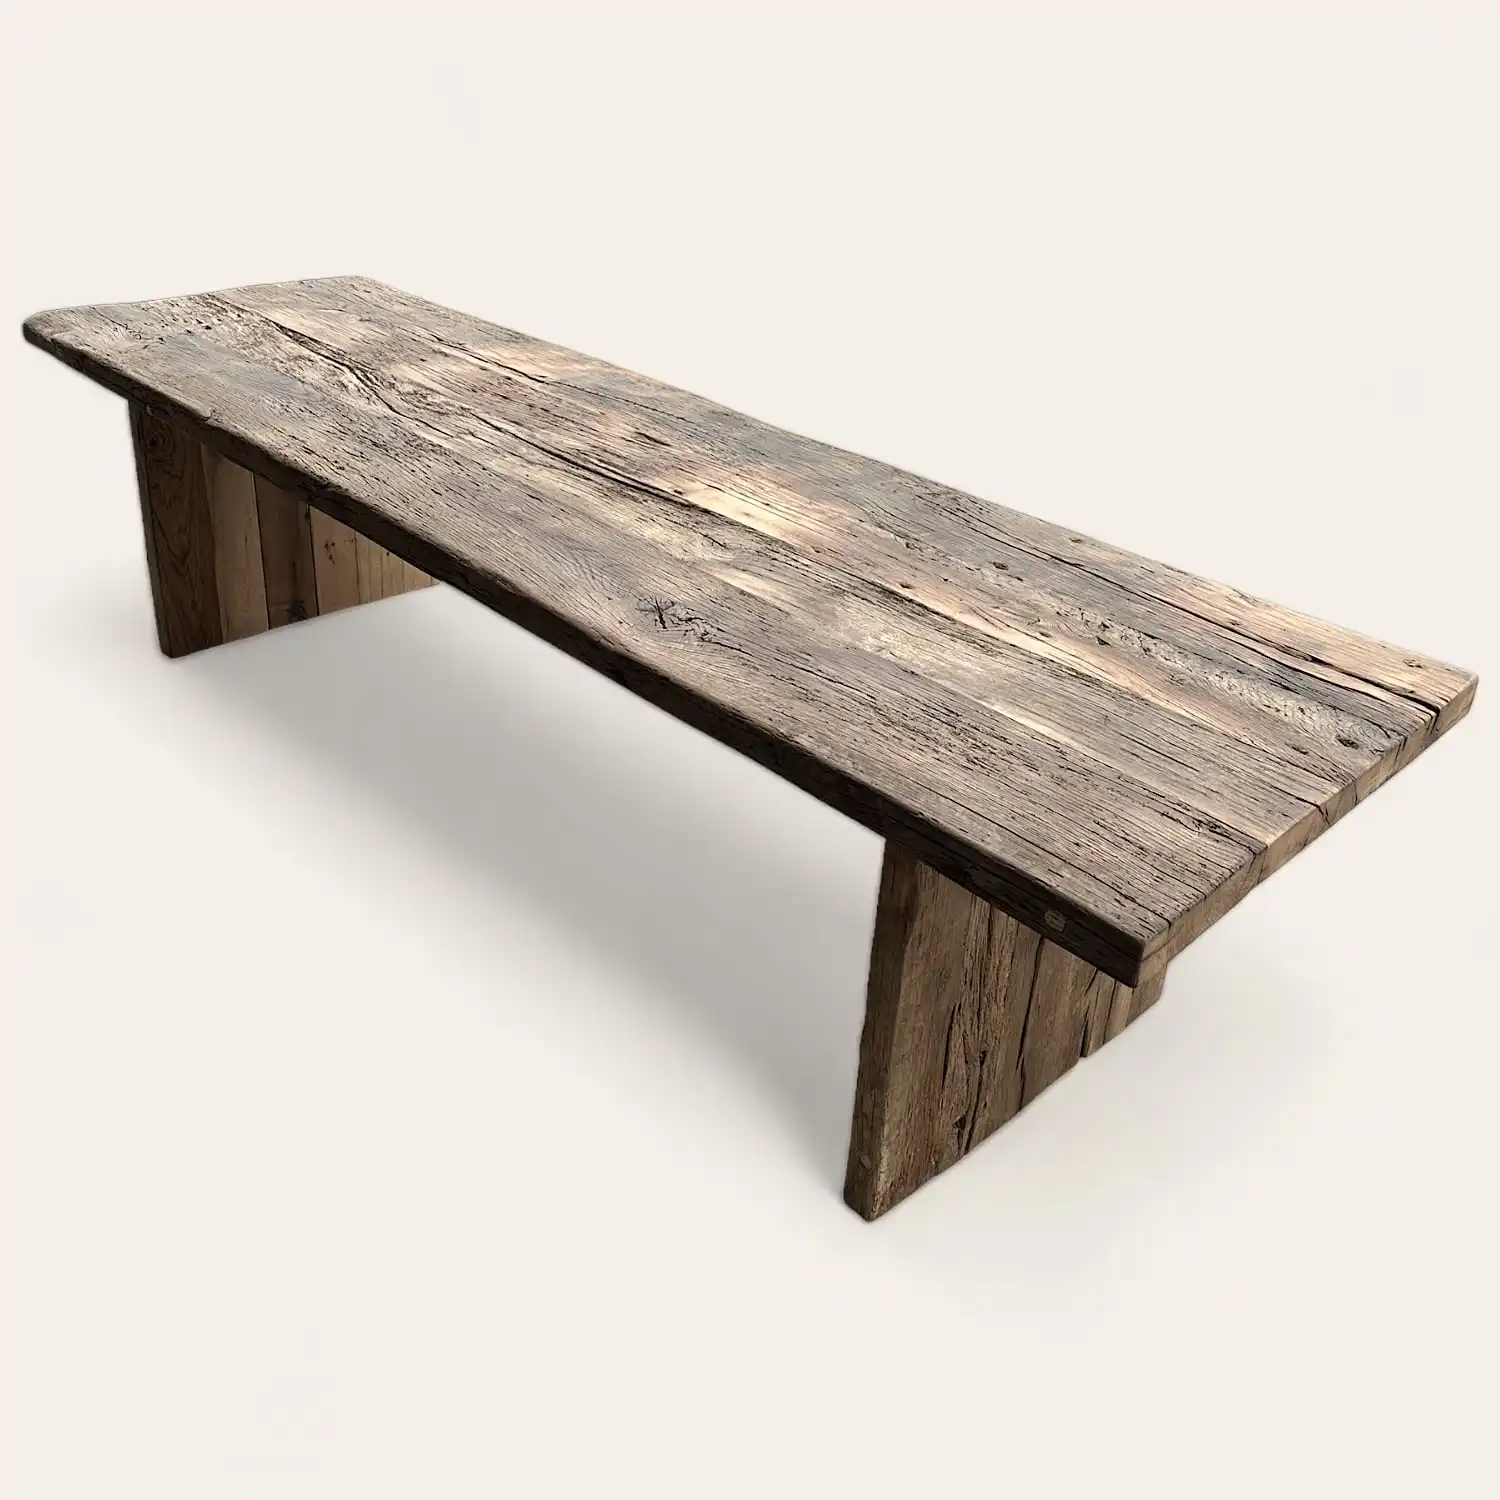  Une table à manger ancienne en bois fabriquée à partir de bois récupéré. 